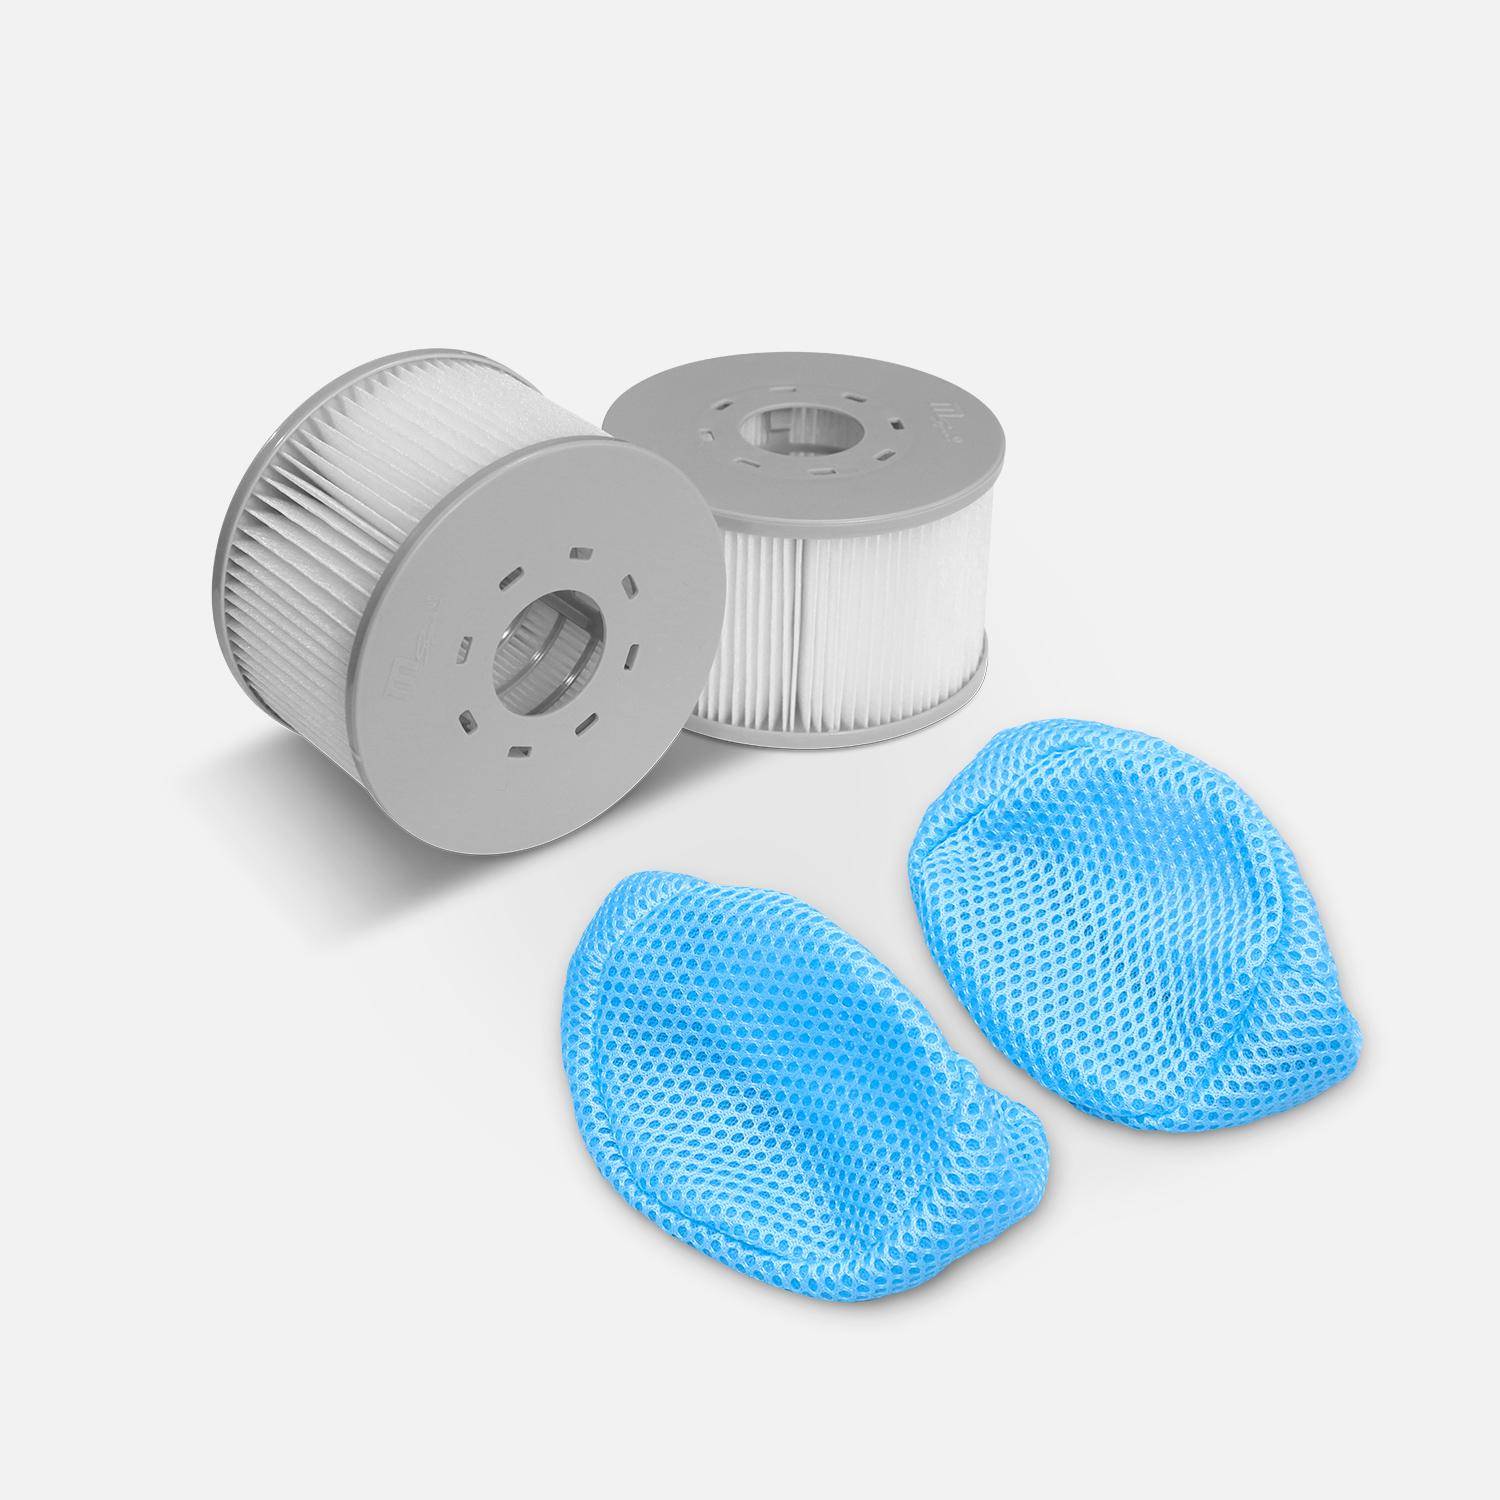 Juego de 2 filtros con redes para spas hinchables MSPA V2, Ø108cm - 2 cartuchos de filtro de recambio para spas hinchables MSPA + 2 redes de protección para spa 2020 Photo1